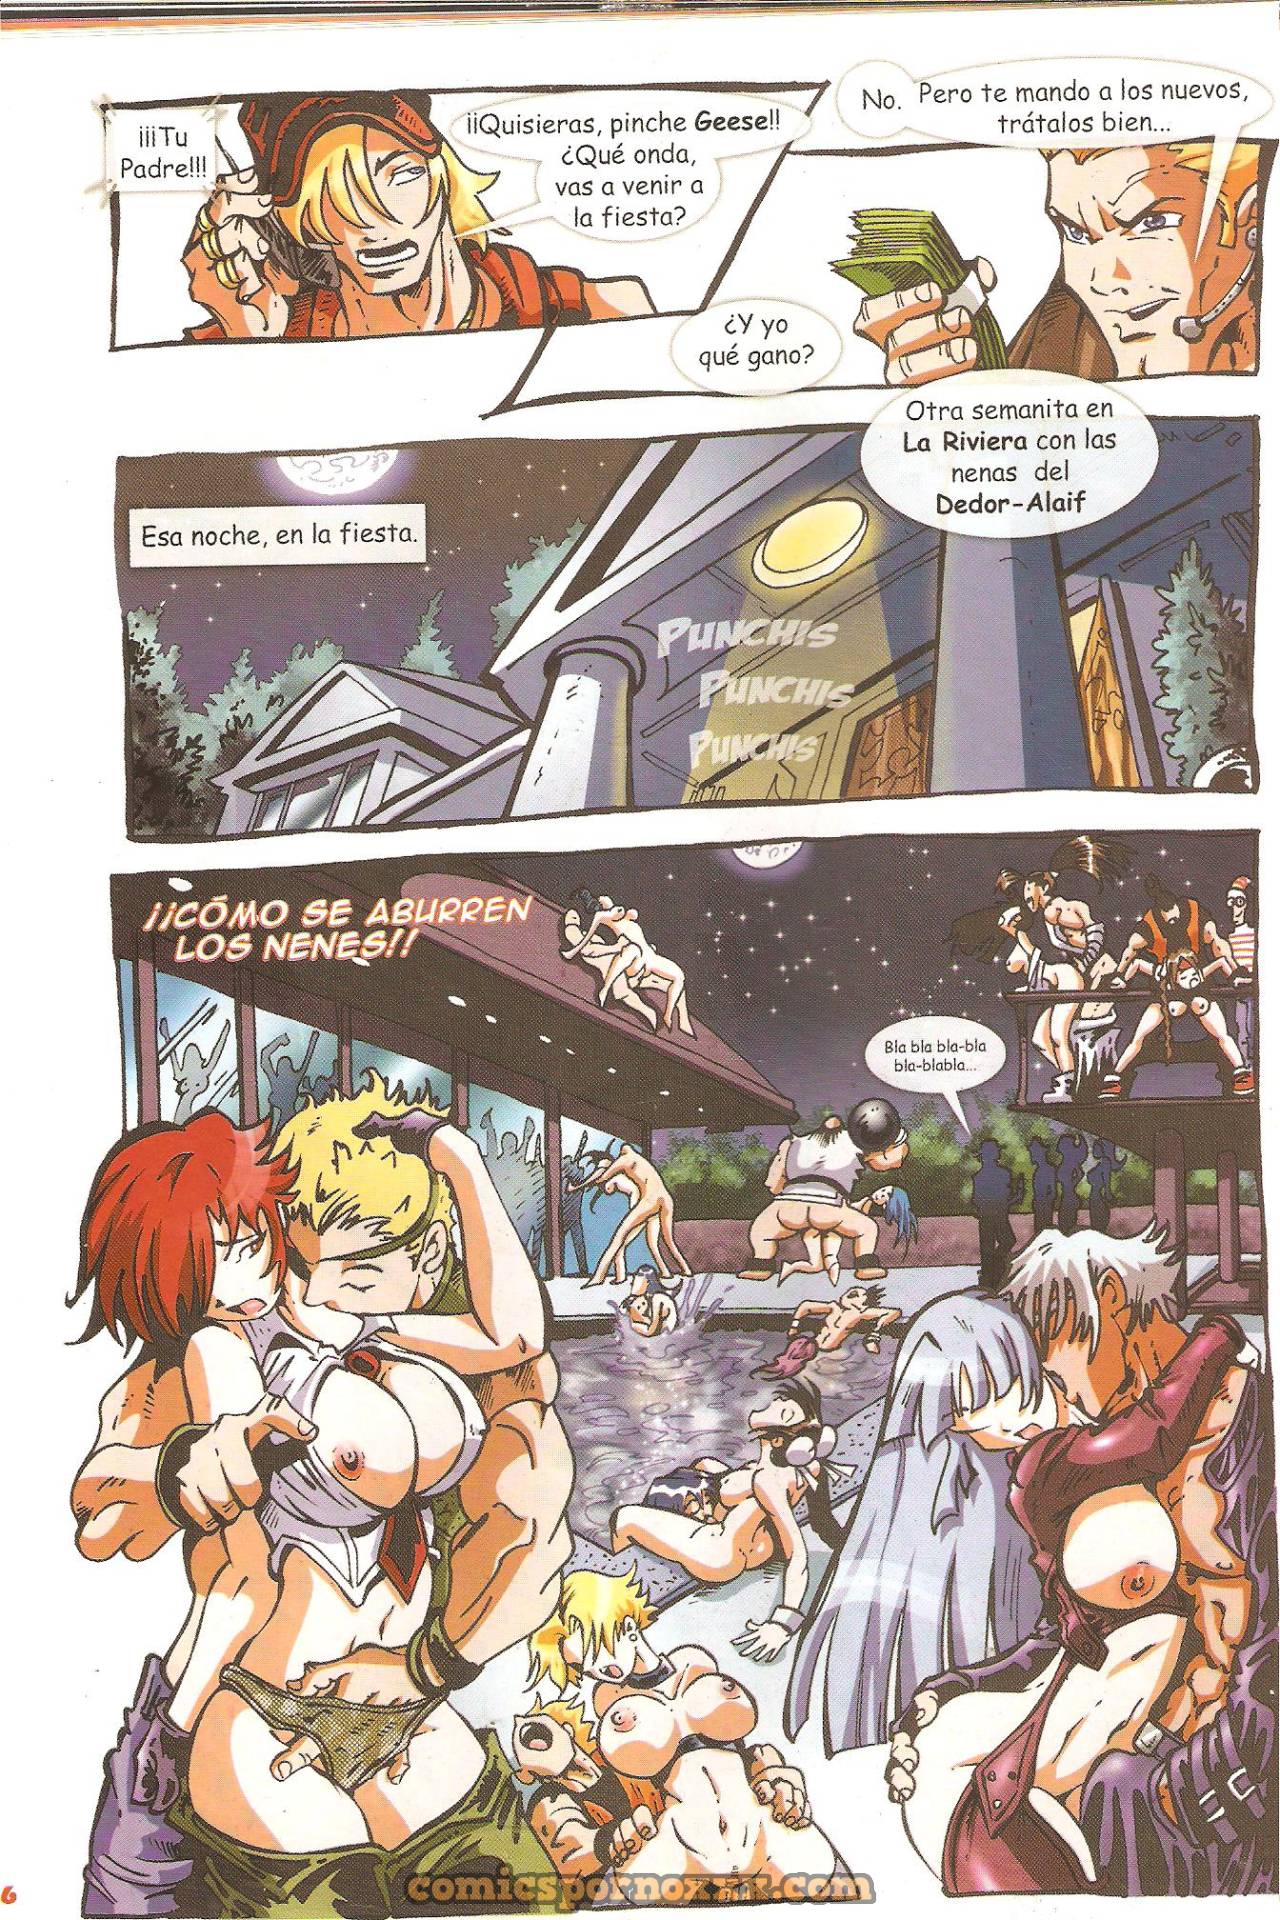 FOK Maxiboobs Impact (Parodias 3X)  - Imagen 9  - Comics Porno - Hentai Manga - Cartoon XXX